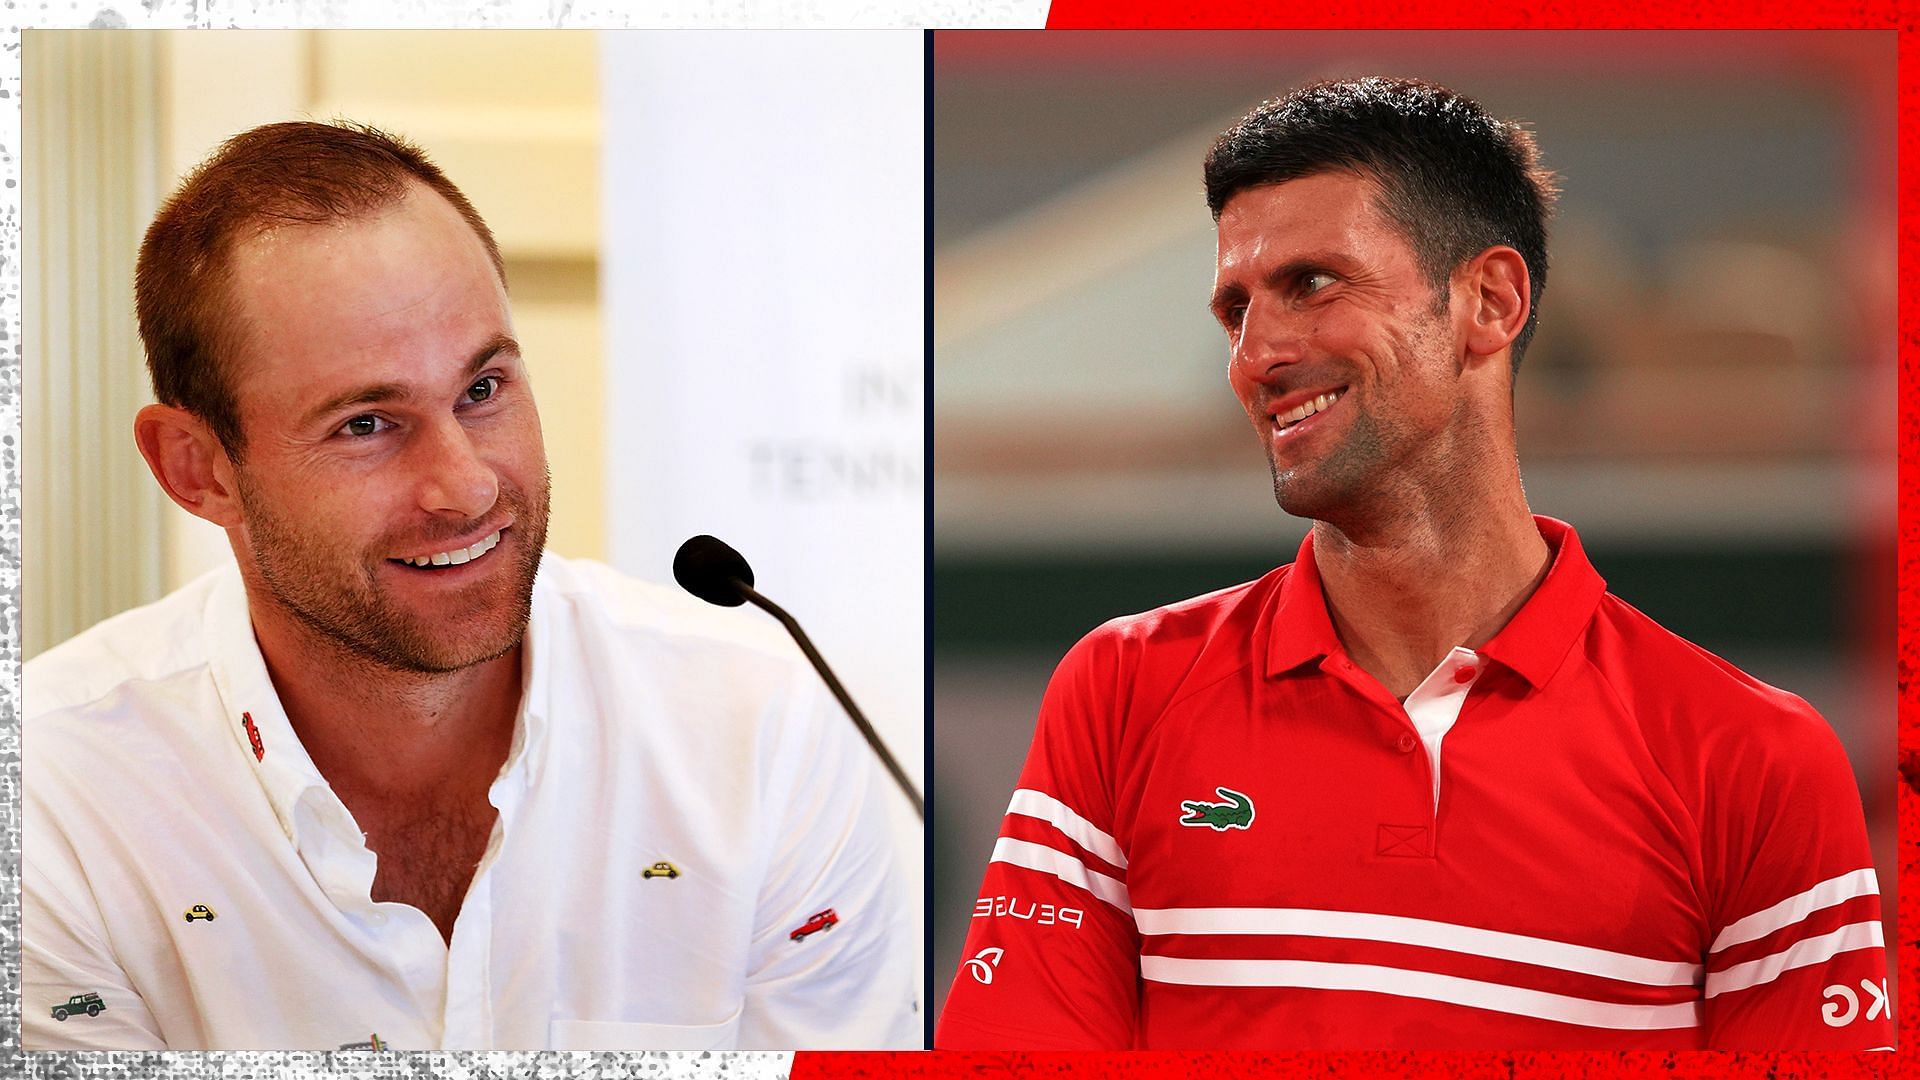 Andy Roddick (L) and Novak Djokovic.